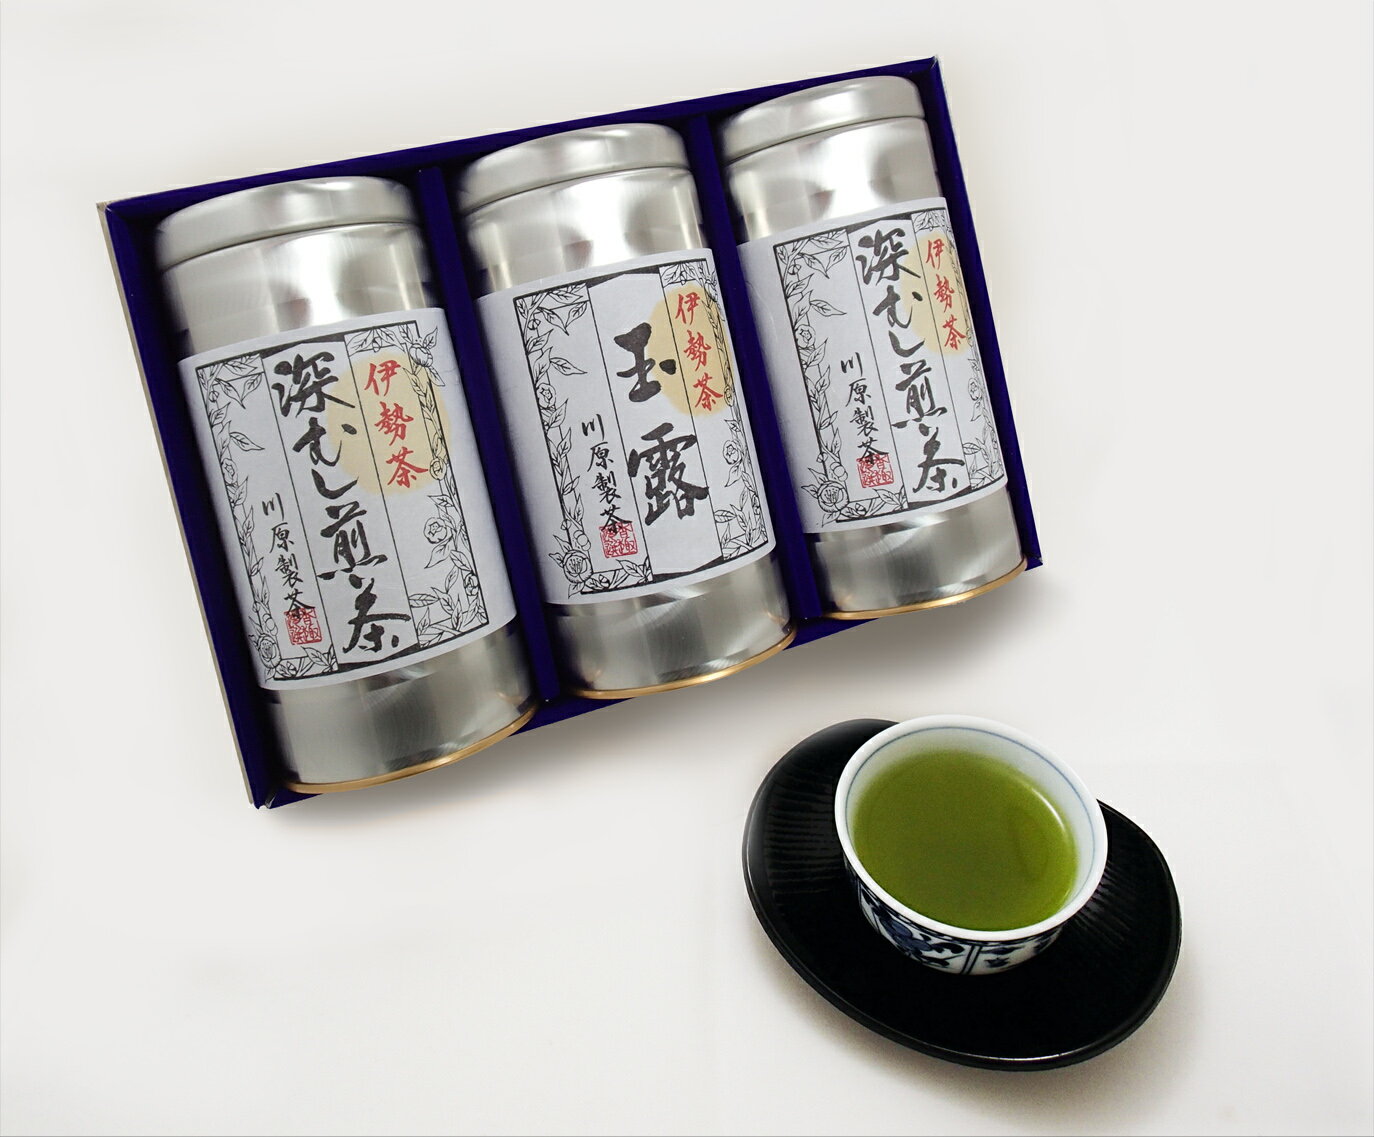 【ふるさと納税】日本三大産地のひとつ 伊勢茶 詰め合わせ A kh-03 ふるさと納税 煎茶